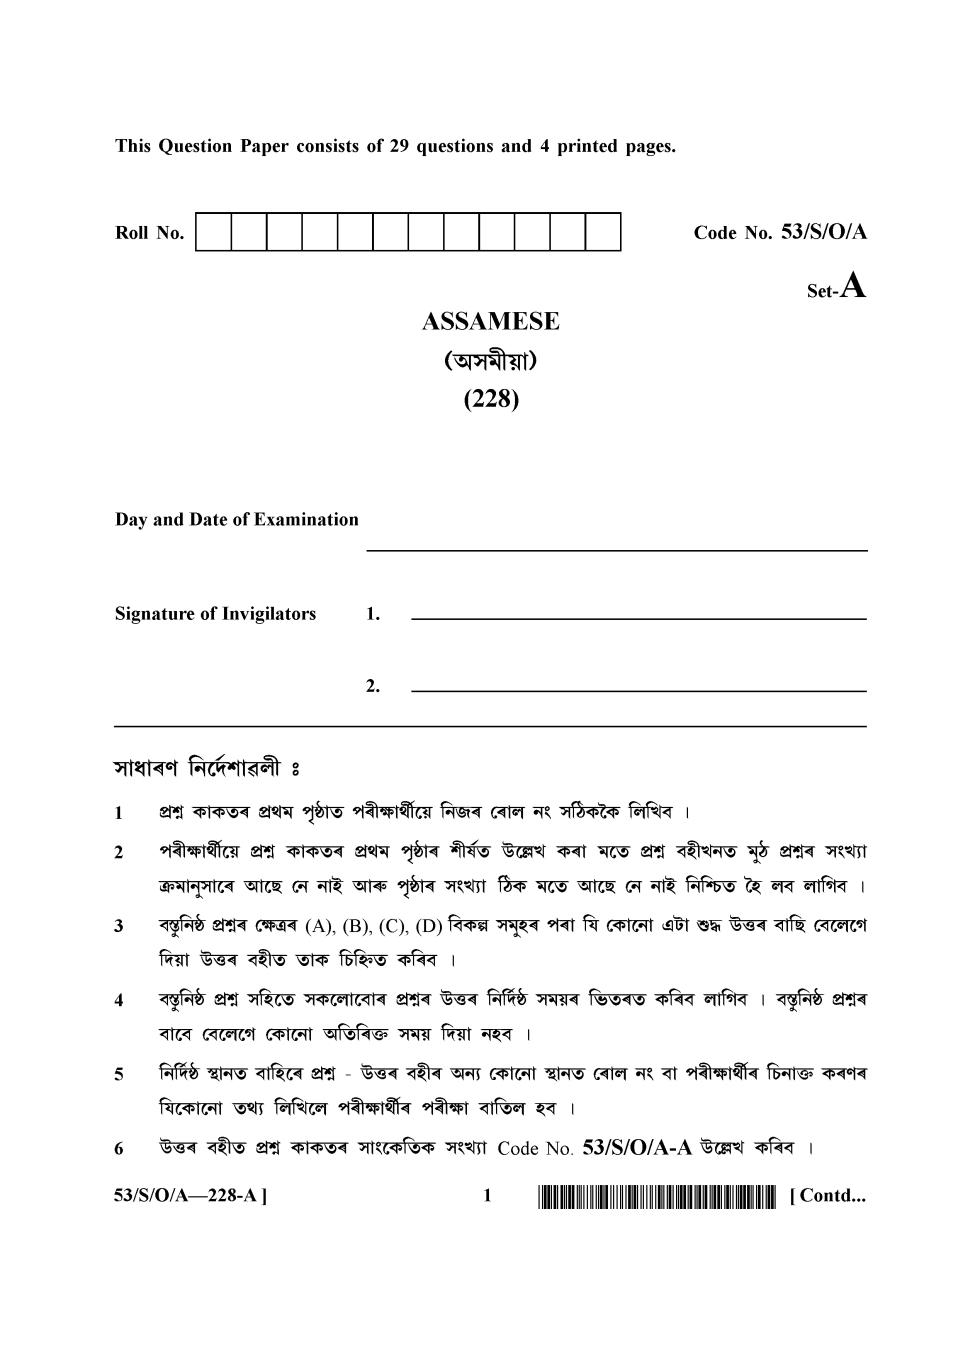 NIOS Class 10 Question Paper Oct 2016 - Assamese - Page 1